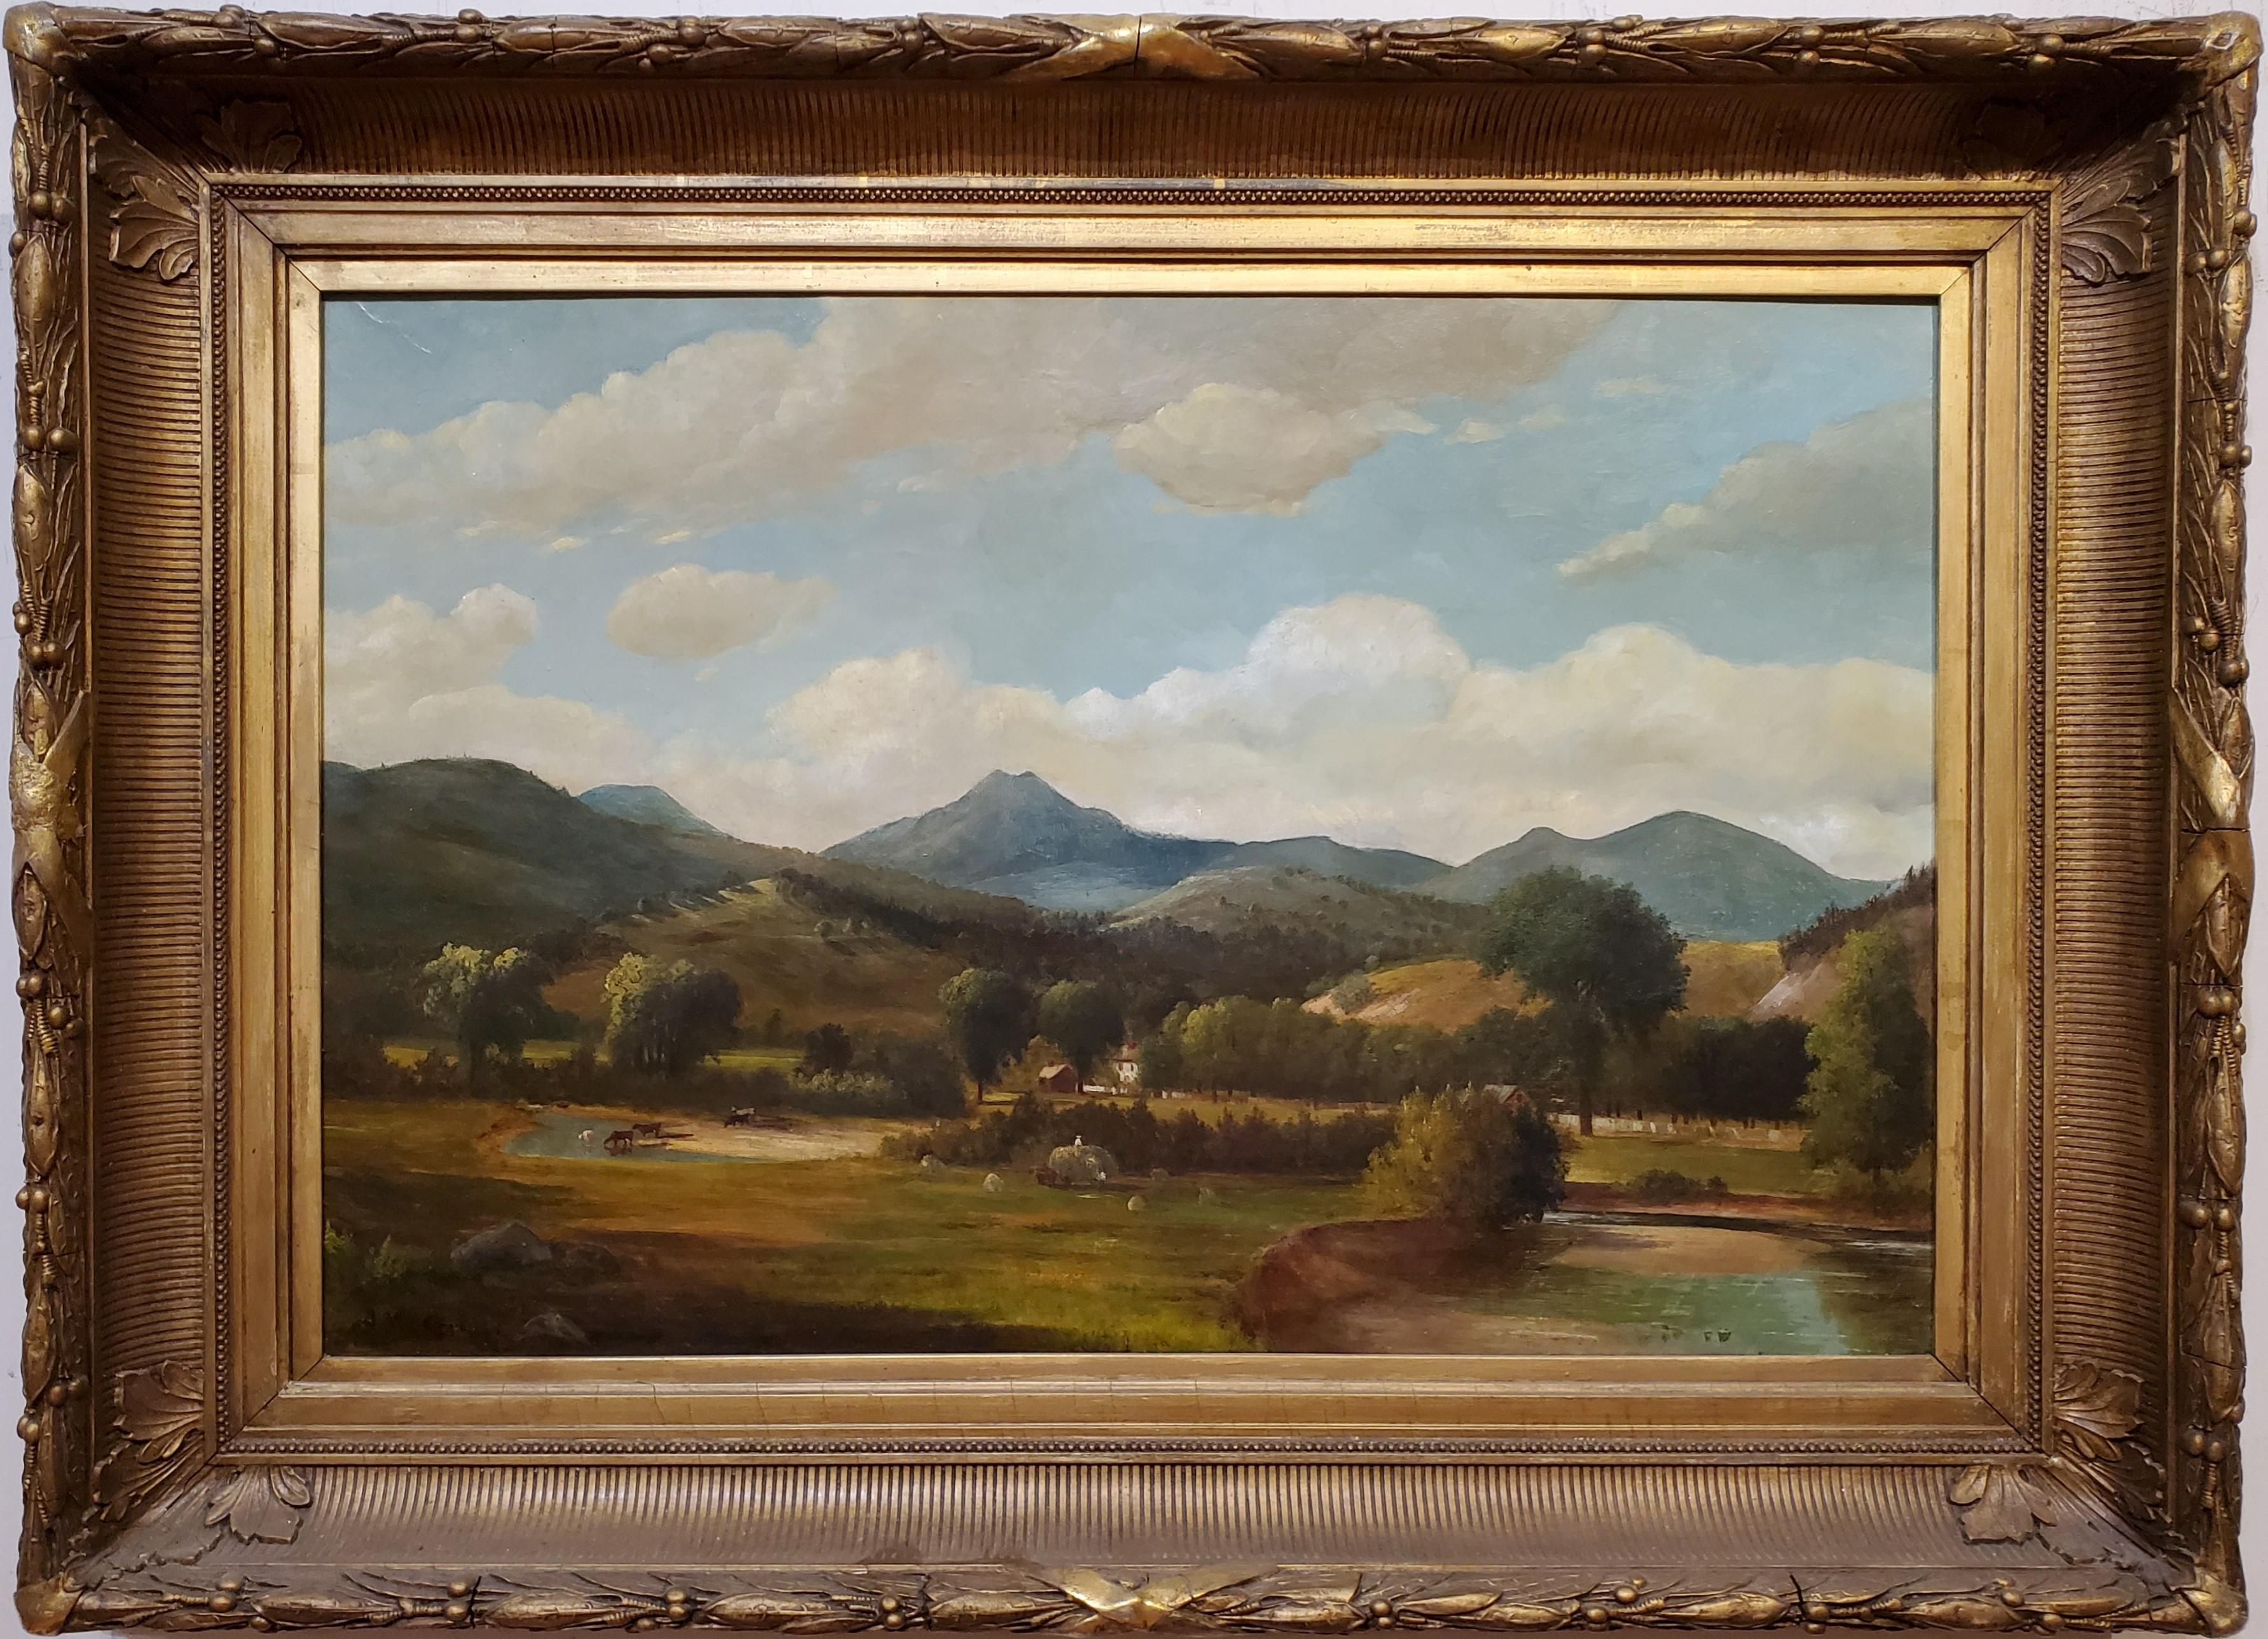 Ölgemälde Landschaftsansicht des Berges Chocurua:: New Hampshire Signiert von Samuel W. Griggs:: einem amerikanischen Künstler:: der zwischen 1827 und 1898 lebte. 

Die New Hampshire Landscape misst 20 Zoll Höhe und 30 Zoll Breite:: und im